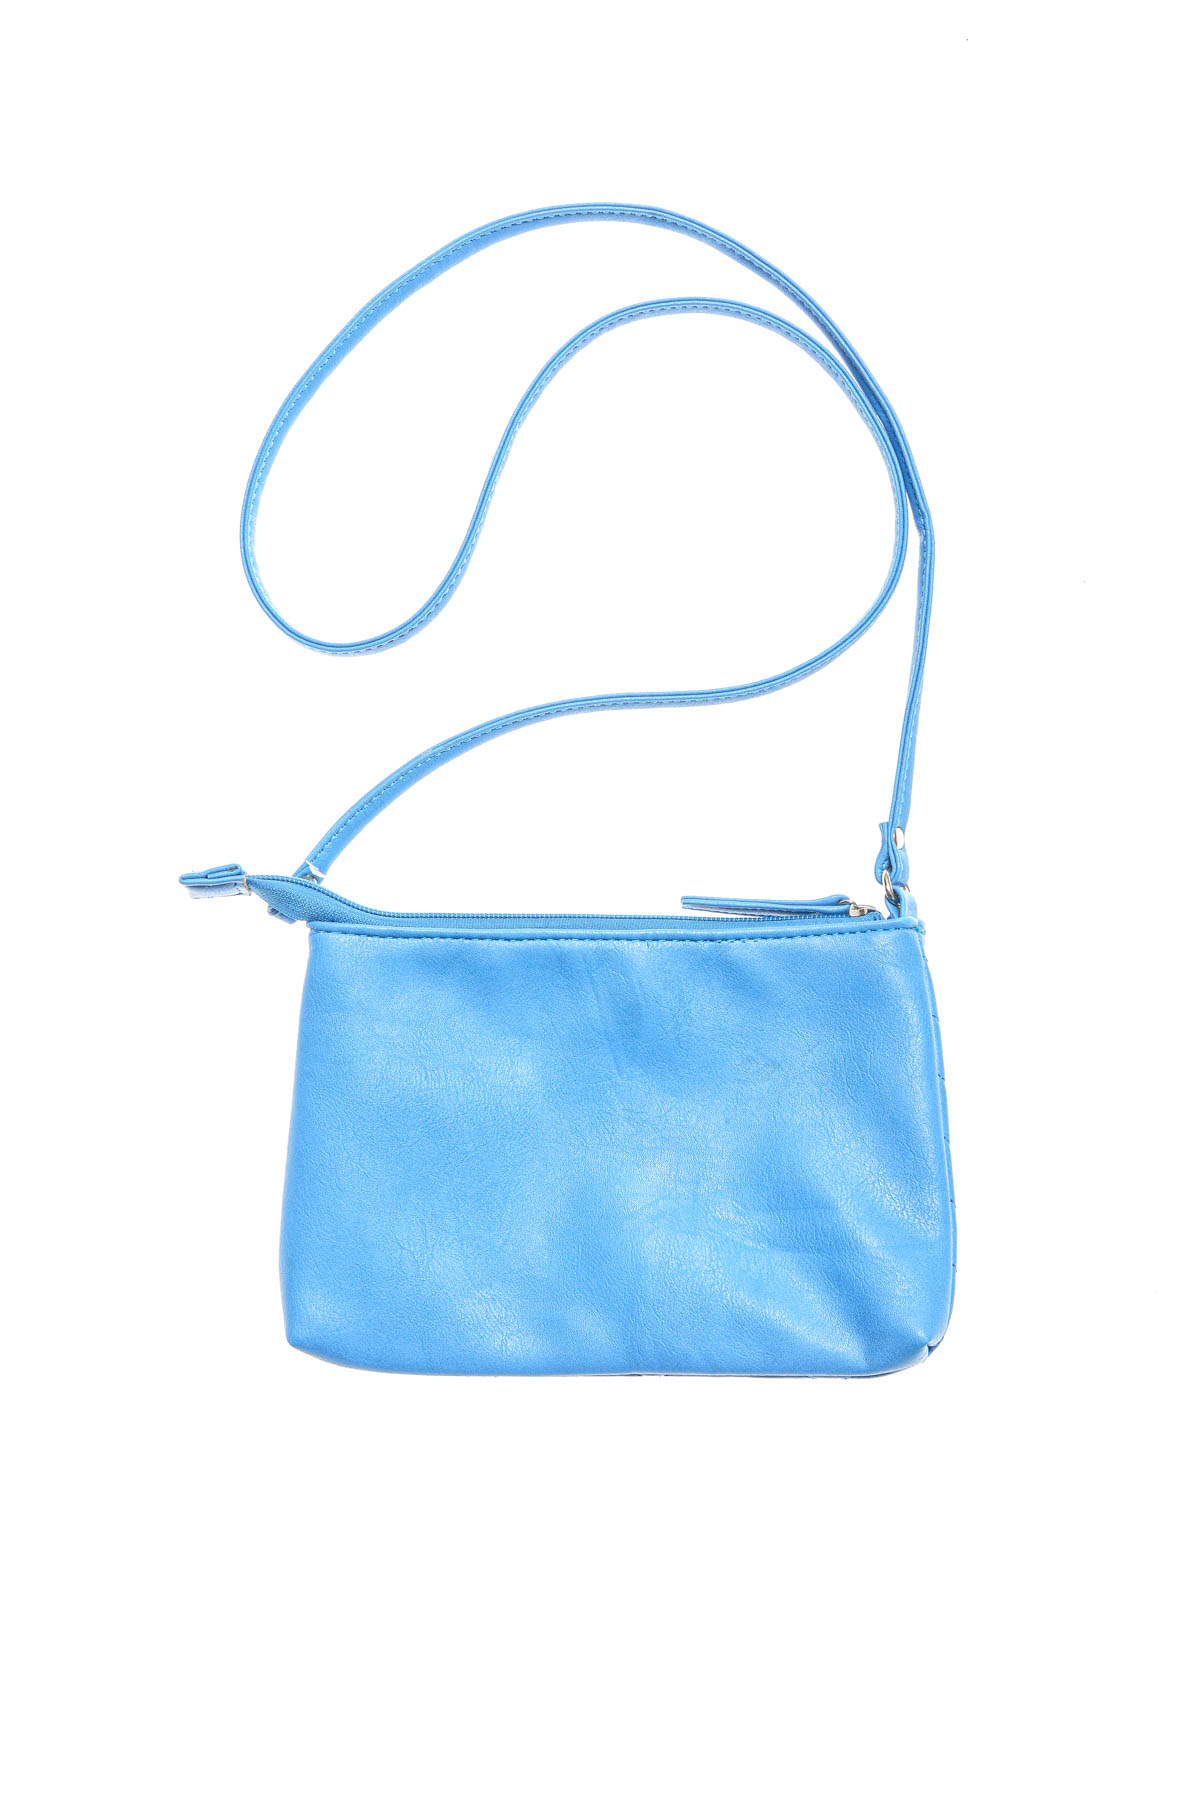 Women's bag - 1